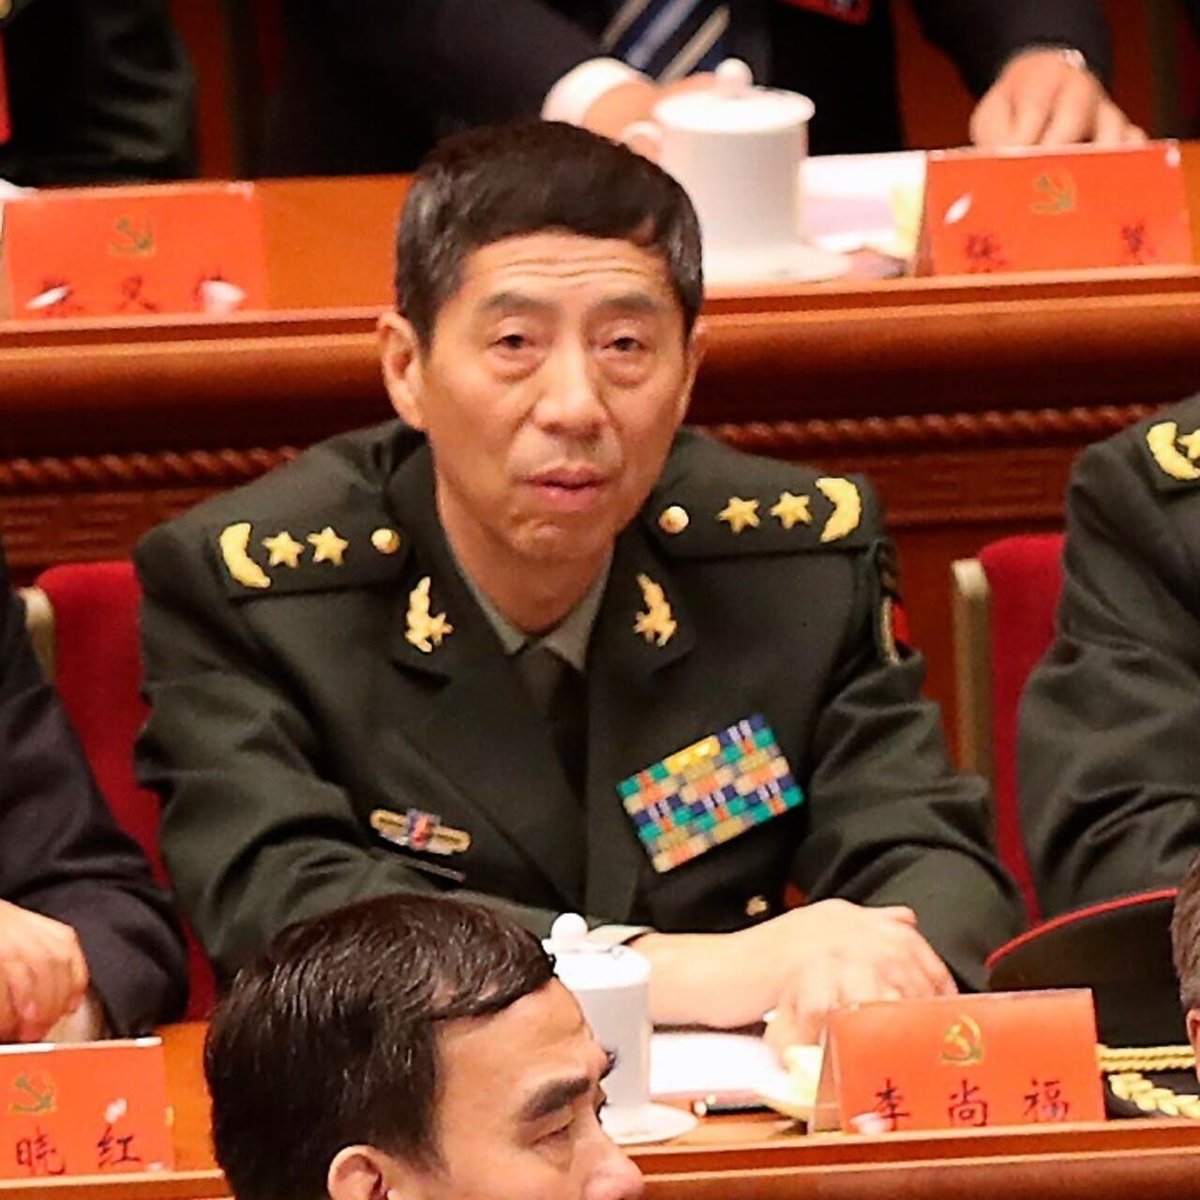 El ministro de Defensa chino -Dong Jun-ha confirmado que Pekín no ha apoyado militarmente a ninguno de los bandos en la guerra de Ucrania.
Esta afirmación llega en medio de acusaciones reiteradas de que China ha sido un gran aliado de Rusia.
...